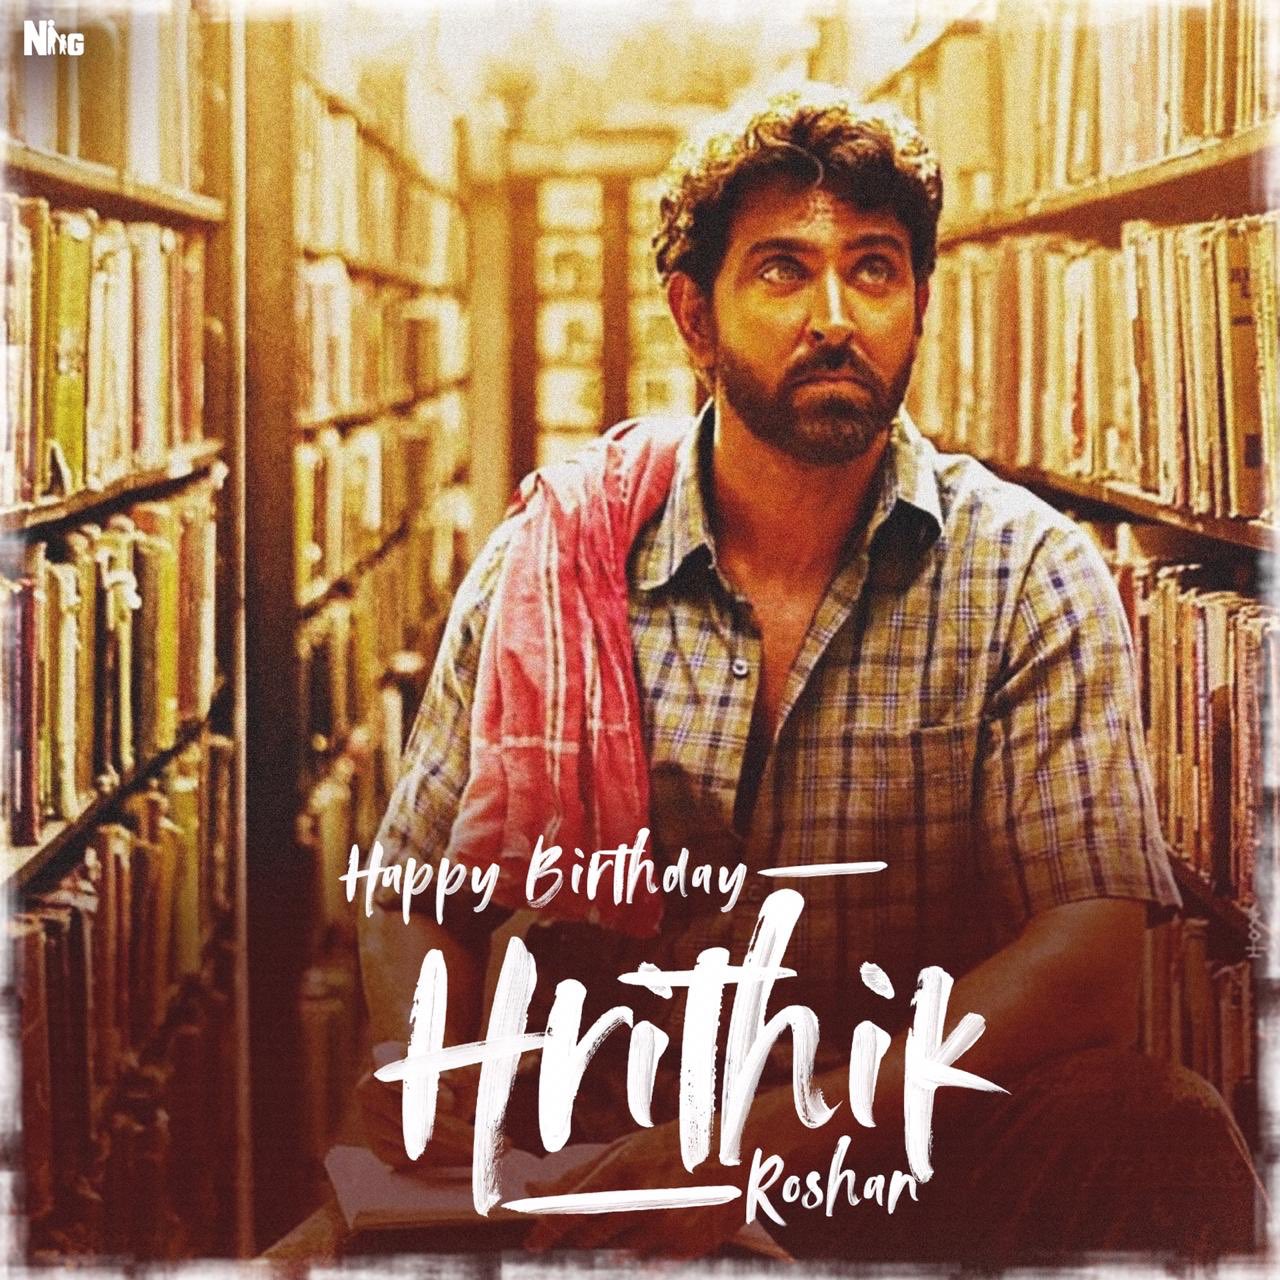 Happy birthday hrithik roshan 